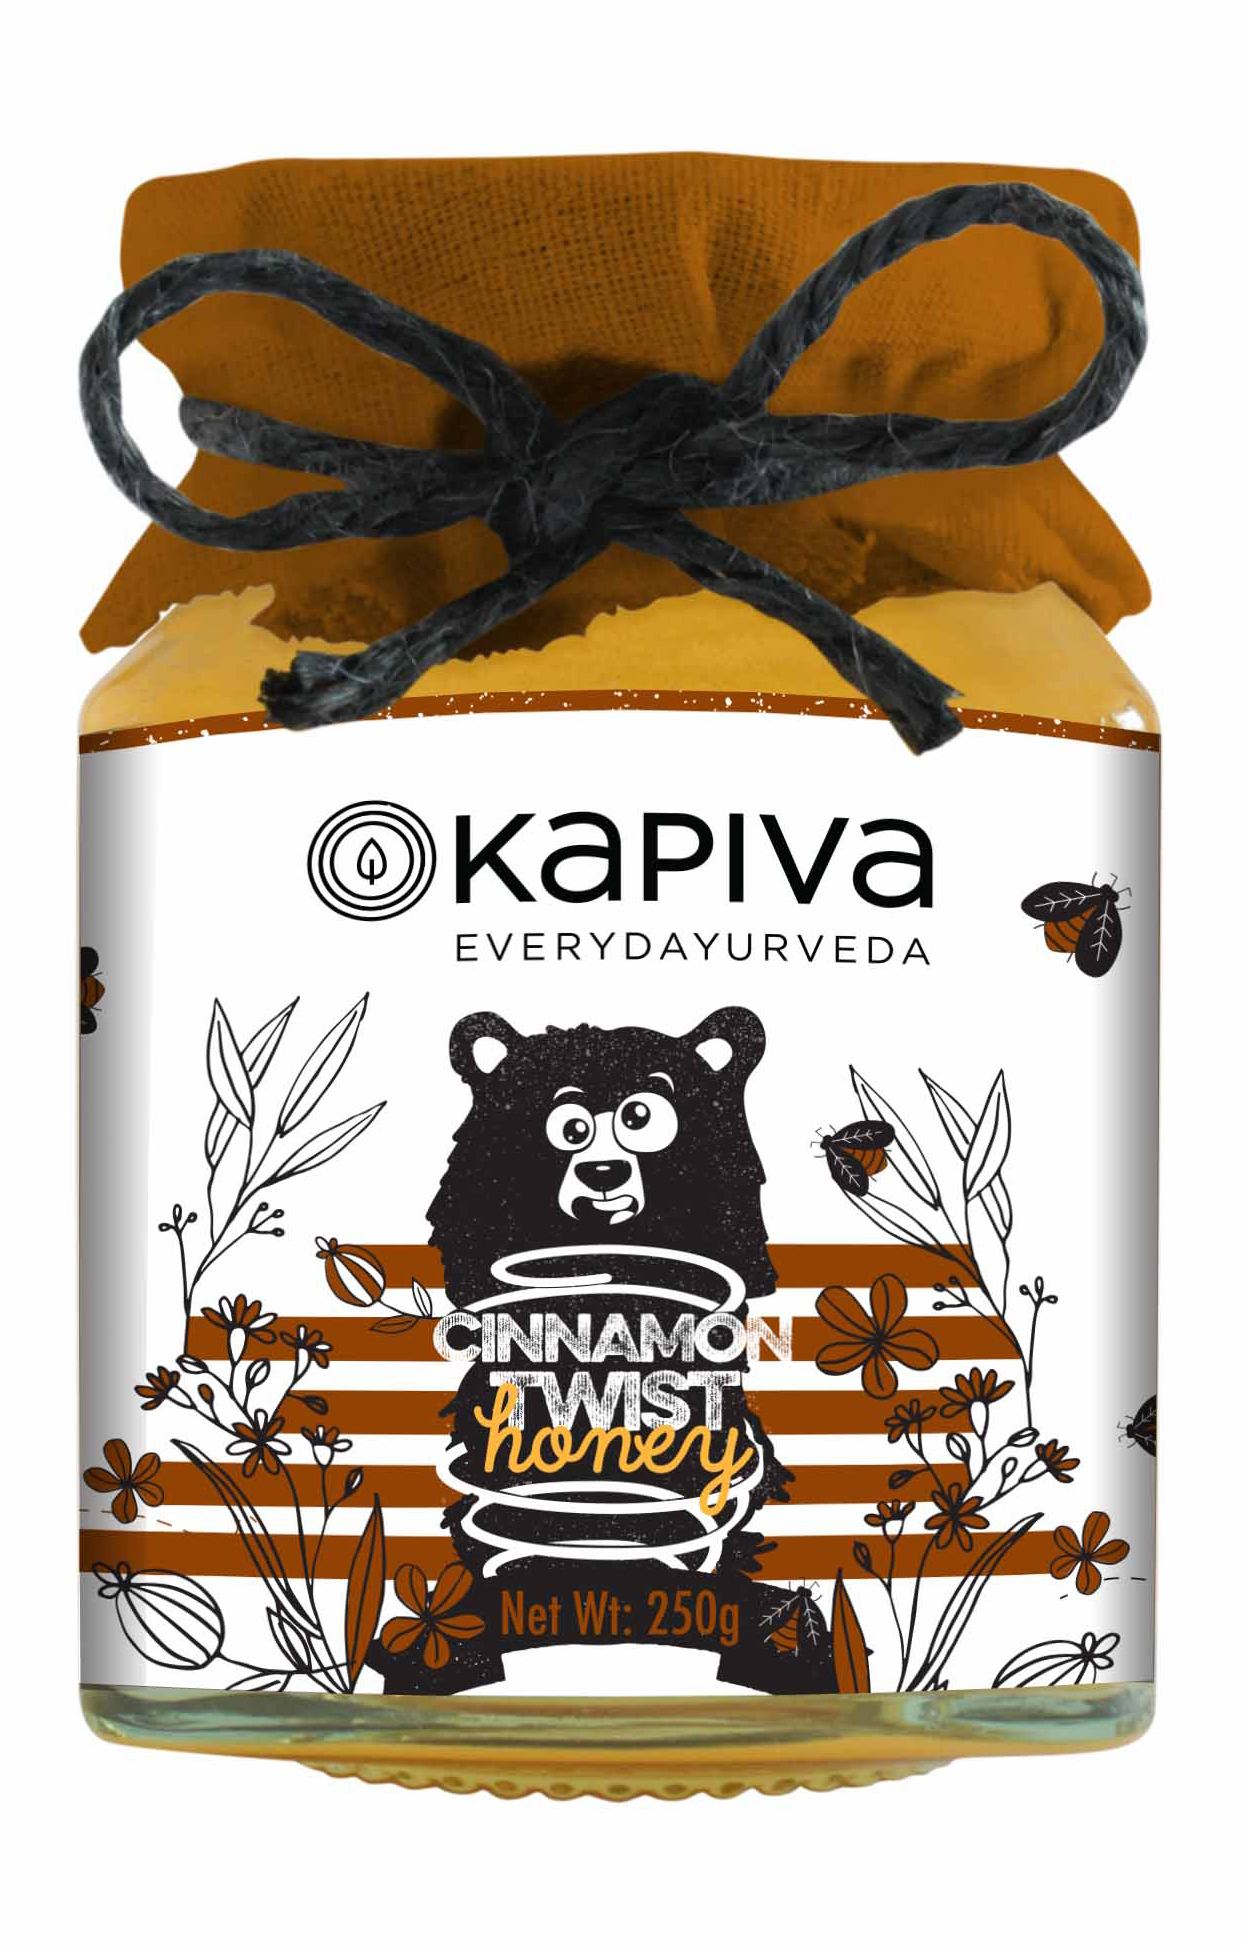 Buy Kapiva Cinnamon Twist Honey at Best Price Online